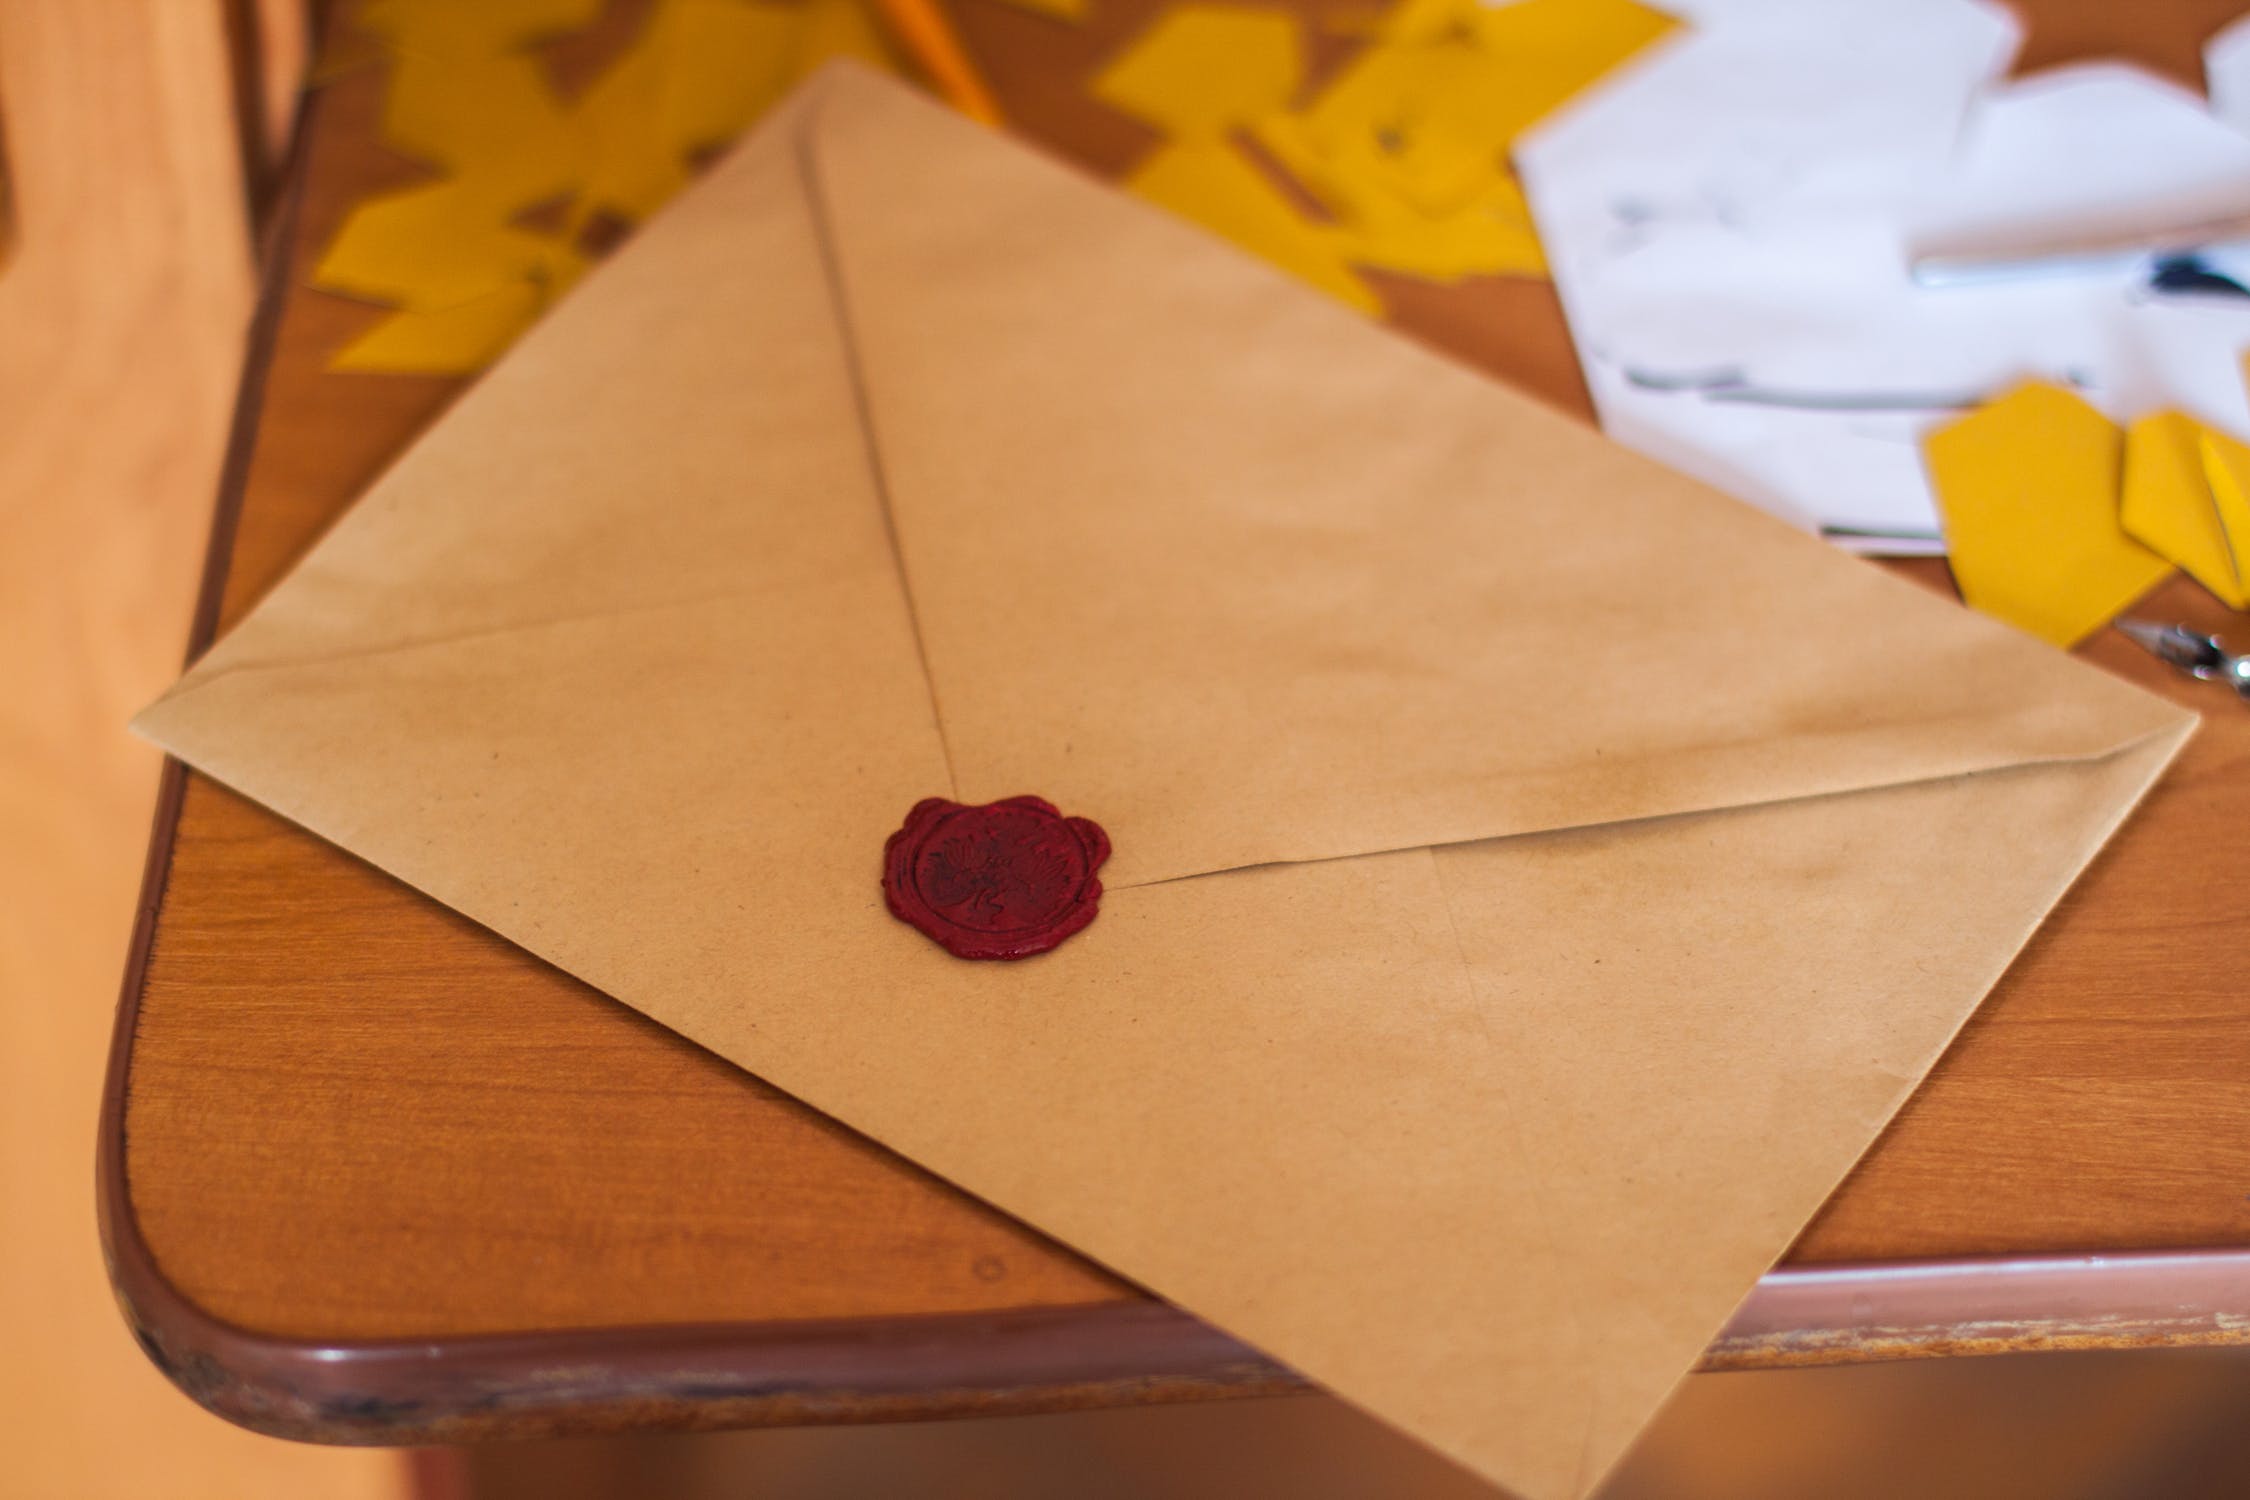 A sealed envelope | Source: Pexels